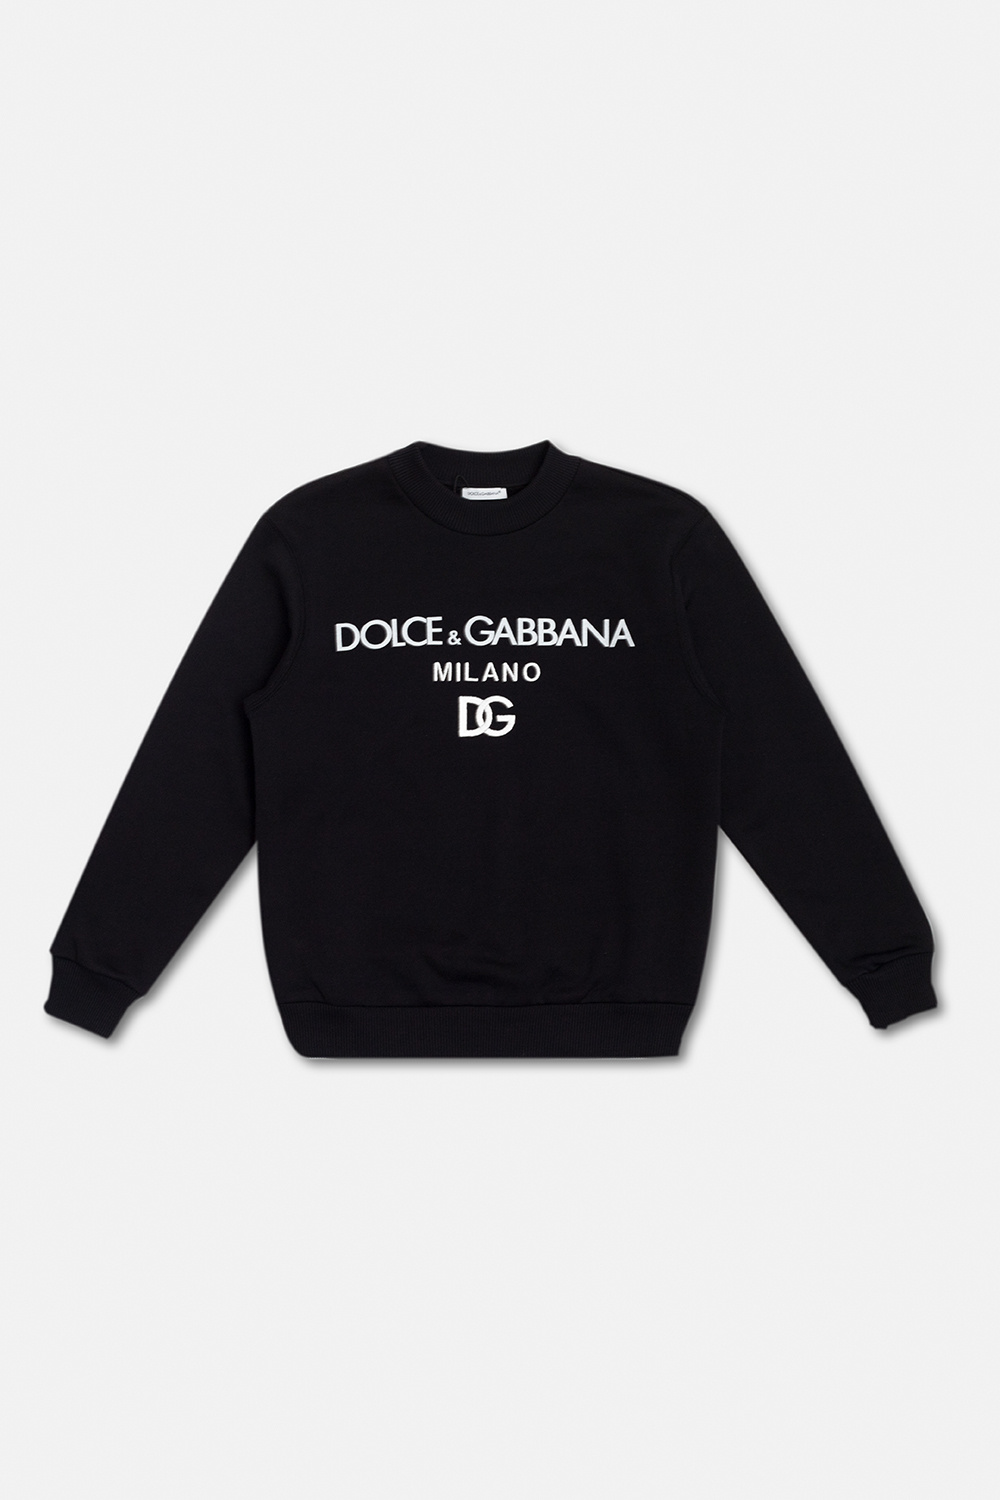 Dolce & Gabbana Kids Dolce & Gabbana dancing character-embroidered T-shirt